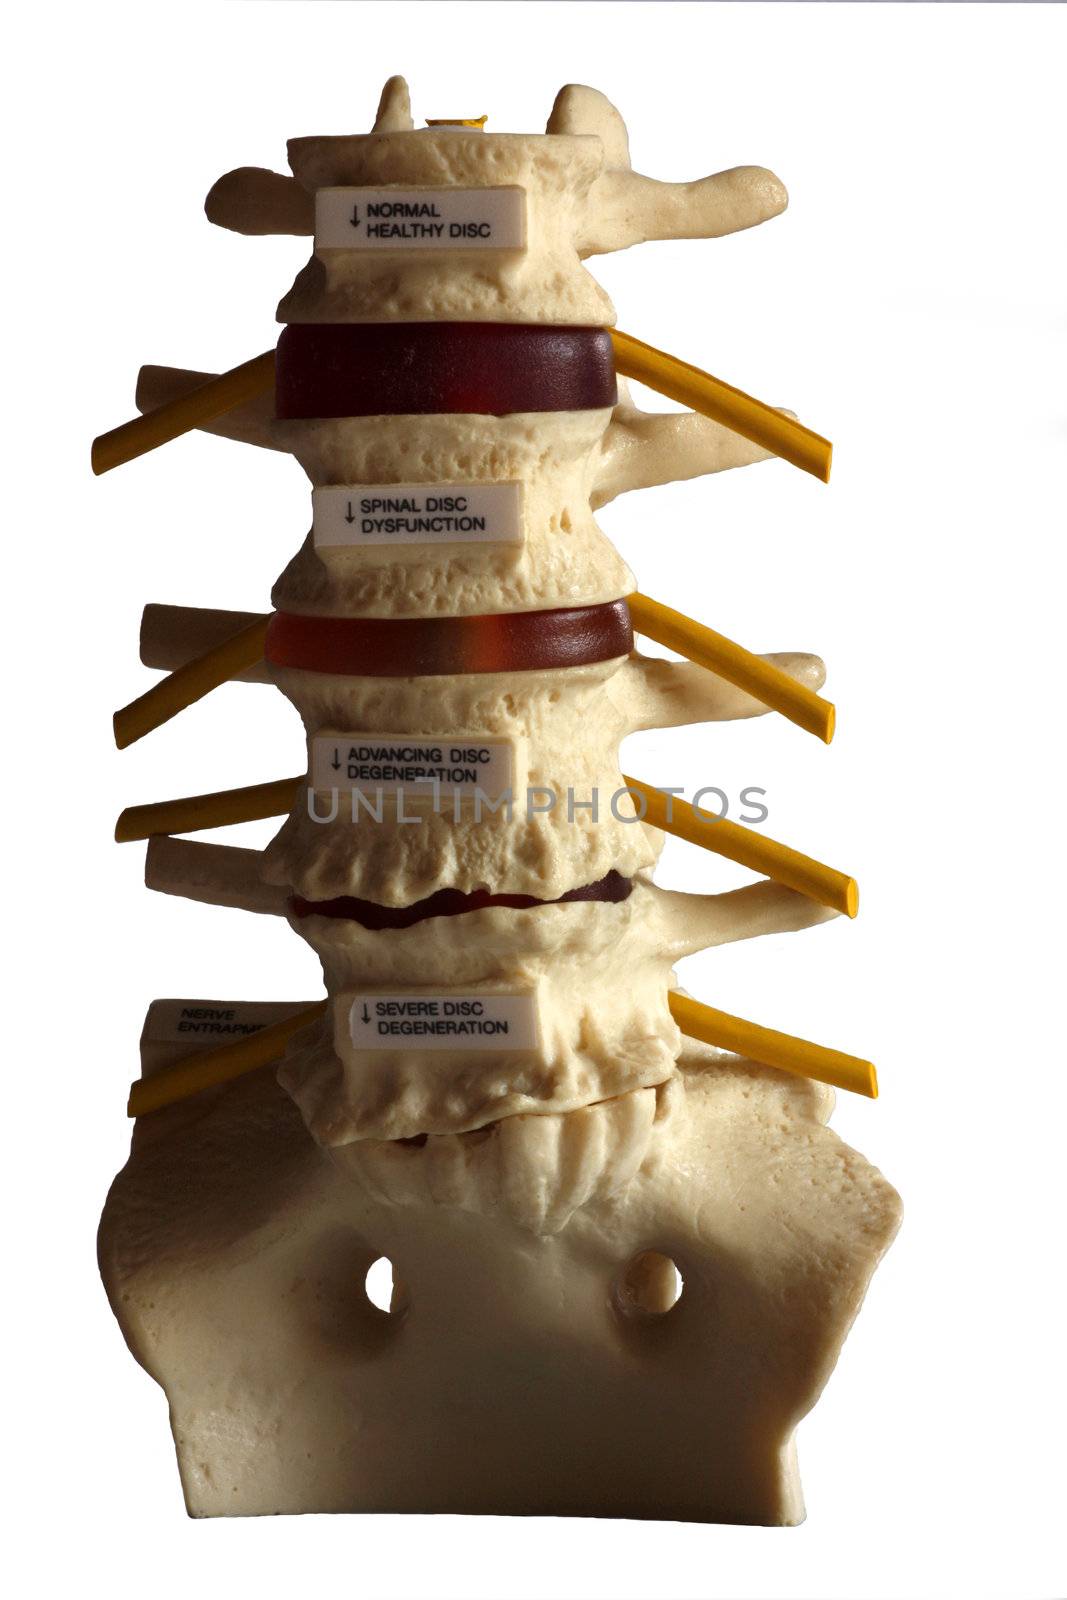 The Spine by Imagecom